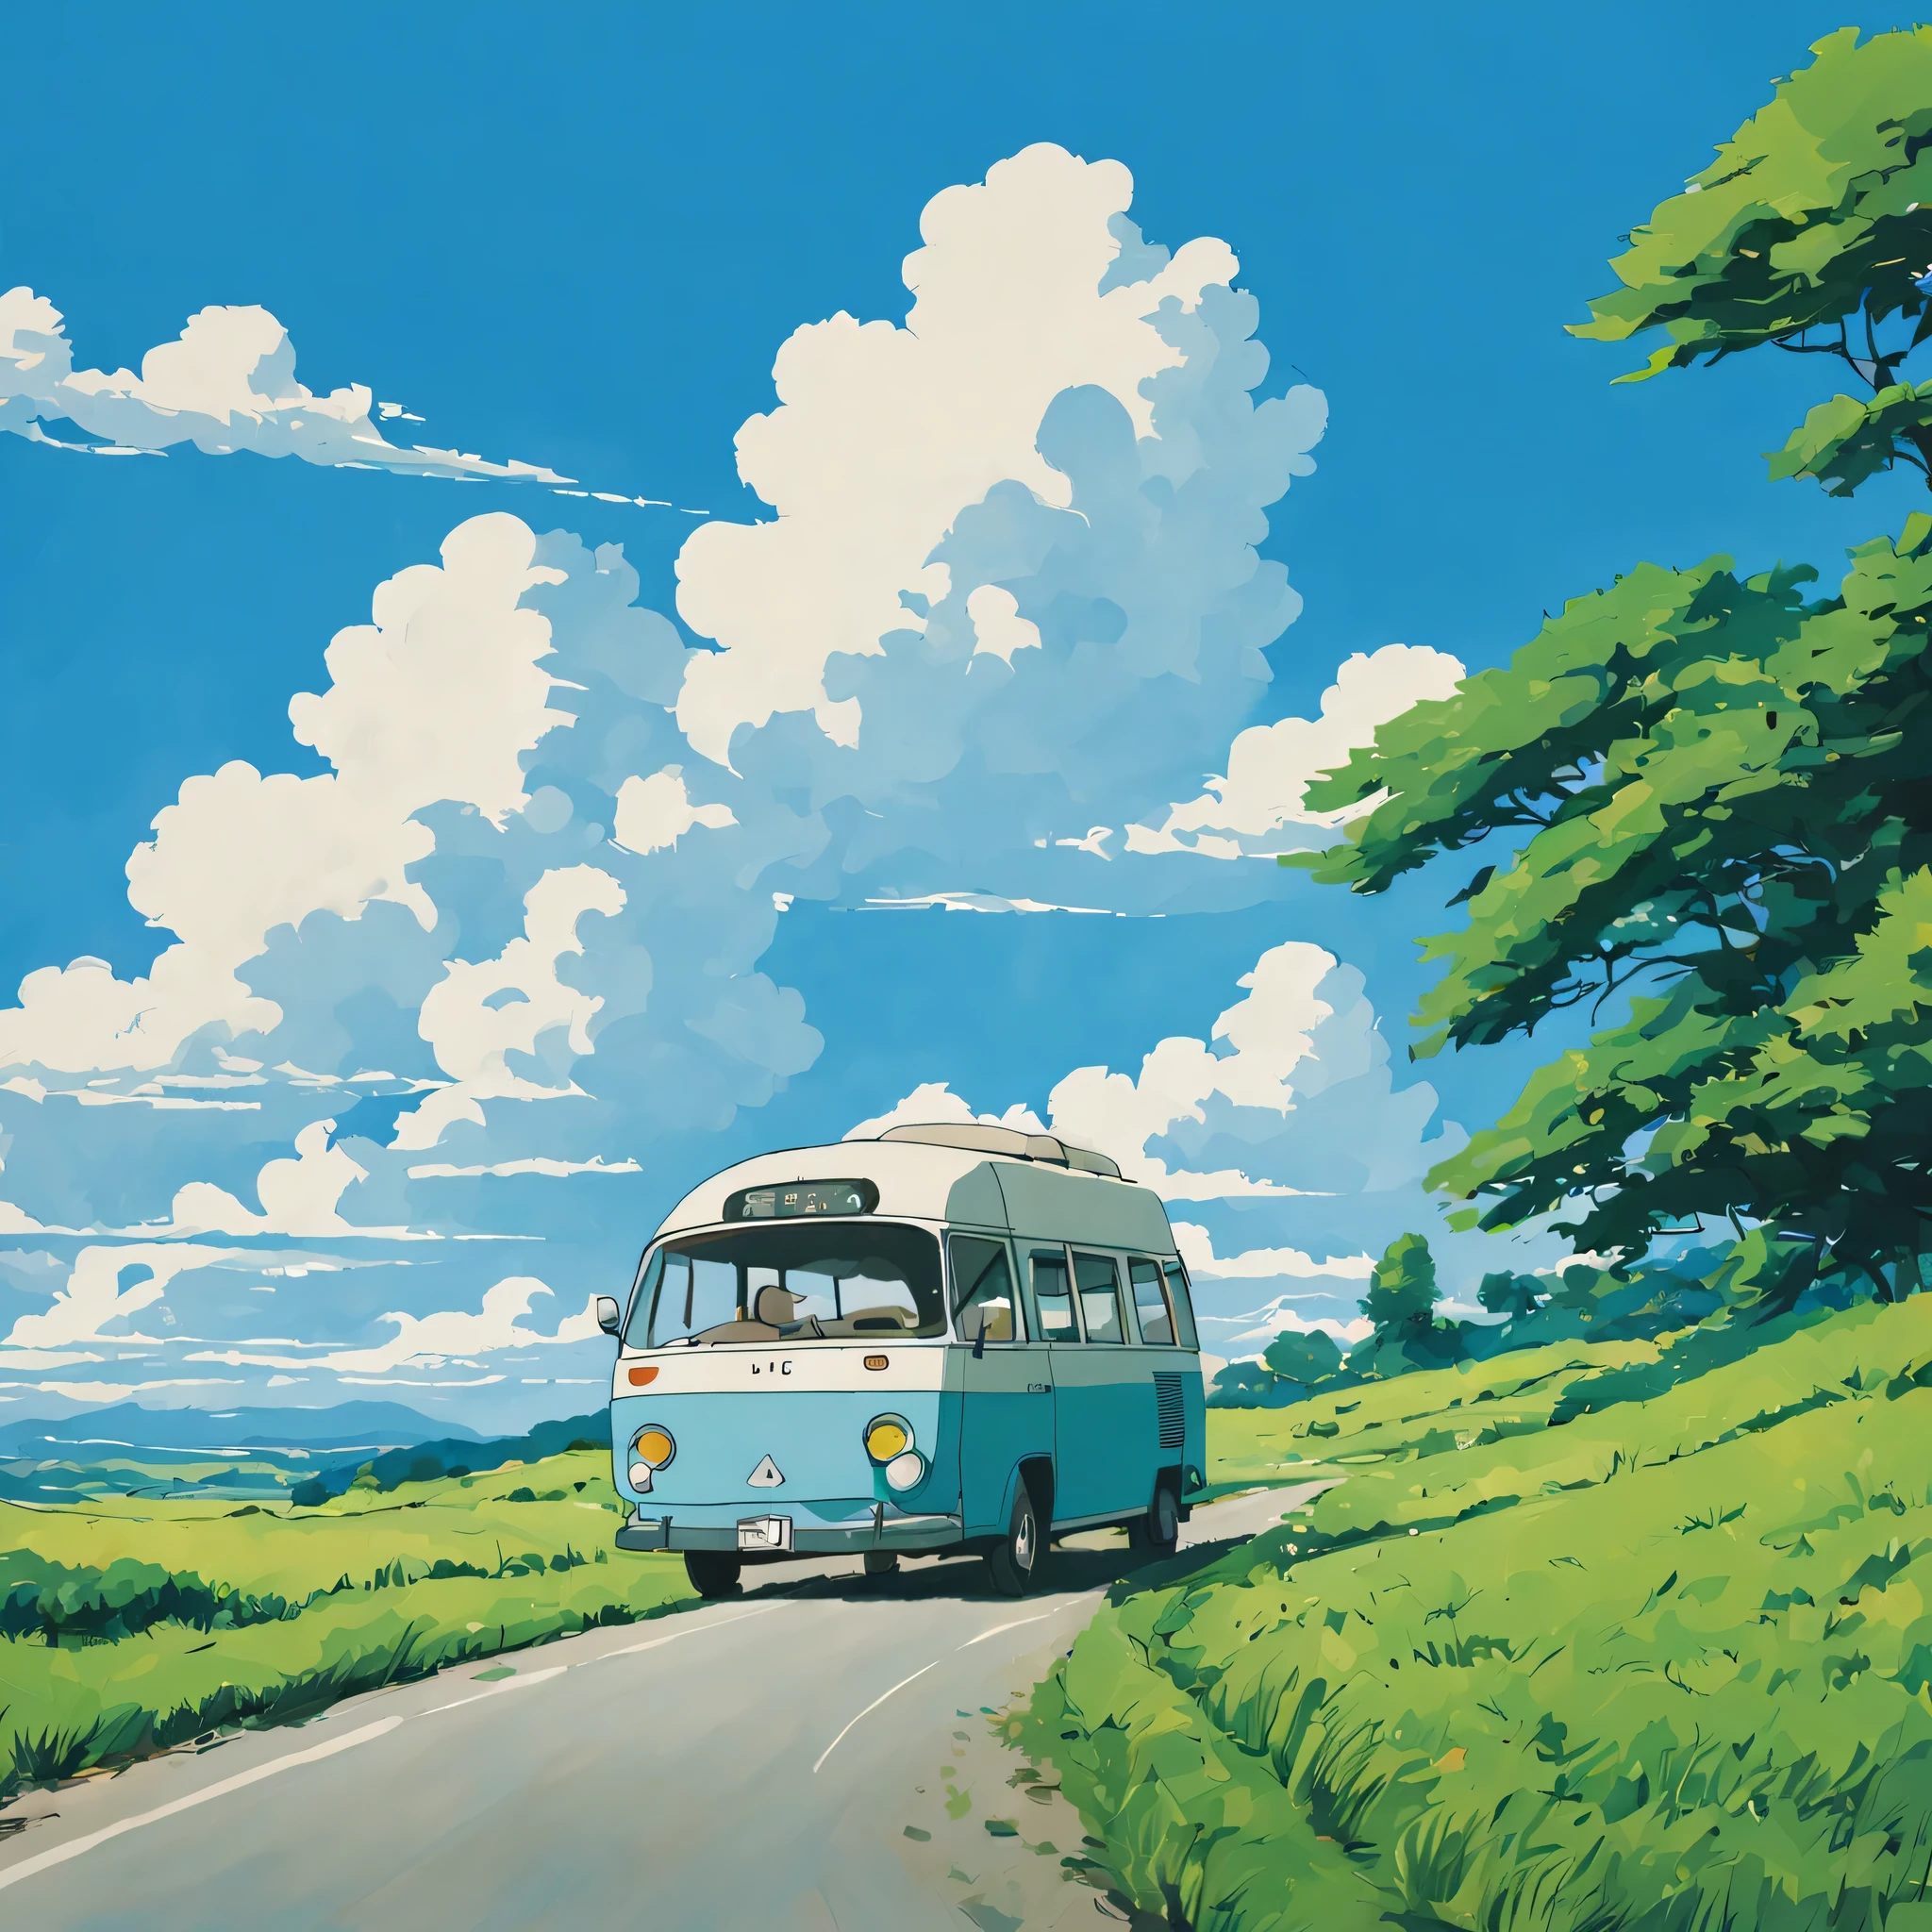 (Minimalisme:1.4), Il y a un minibus sur la route, art des studios Ghibli, Miyazaki, pâturage avec ciel bleu et nuages blancs